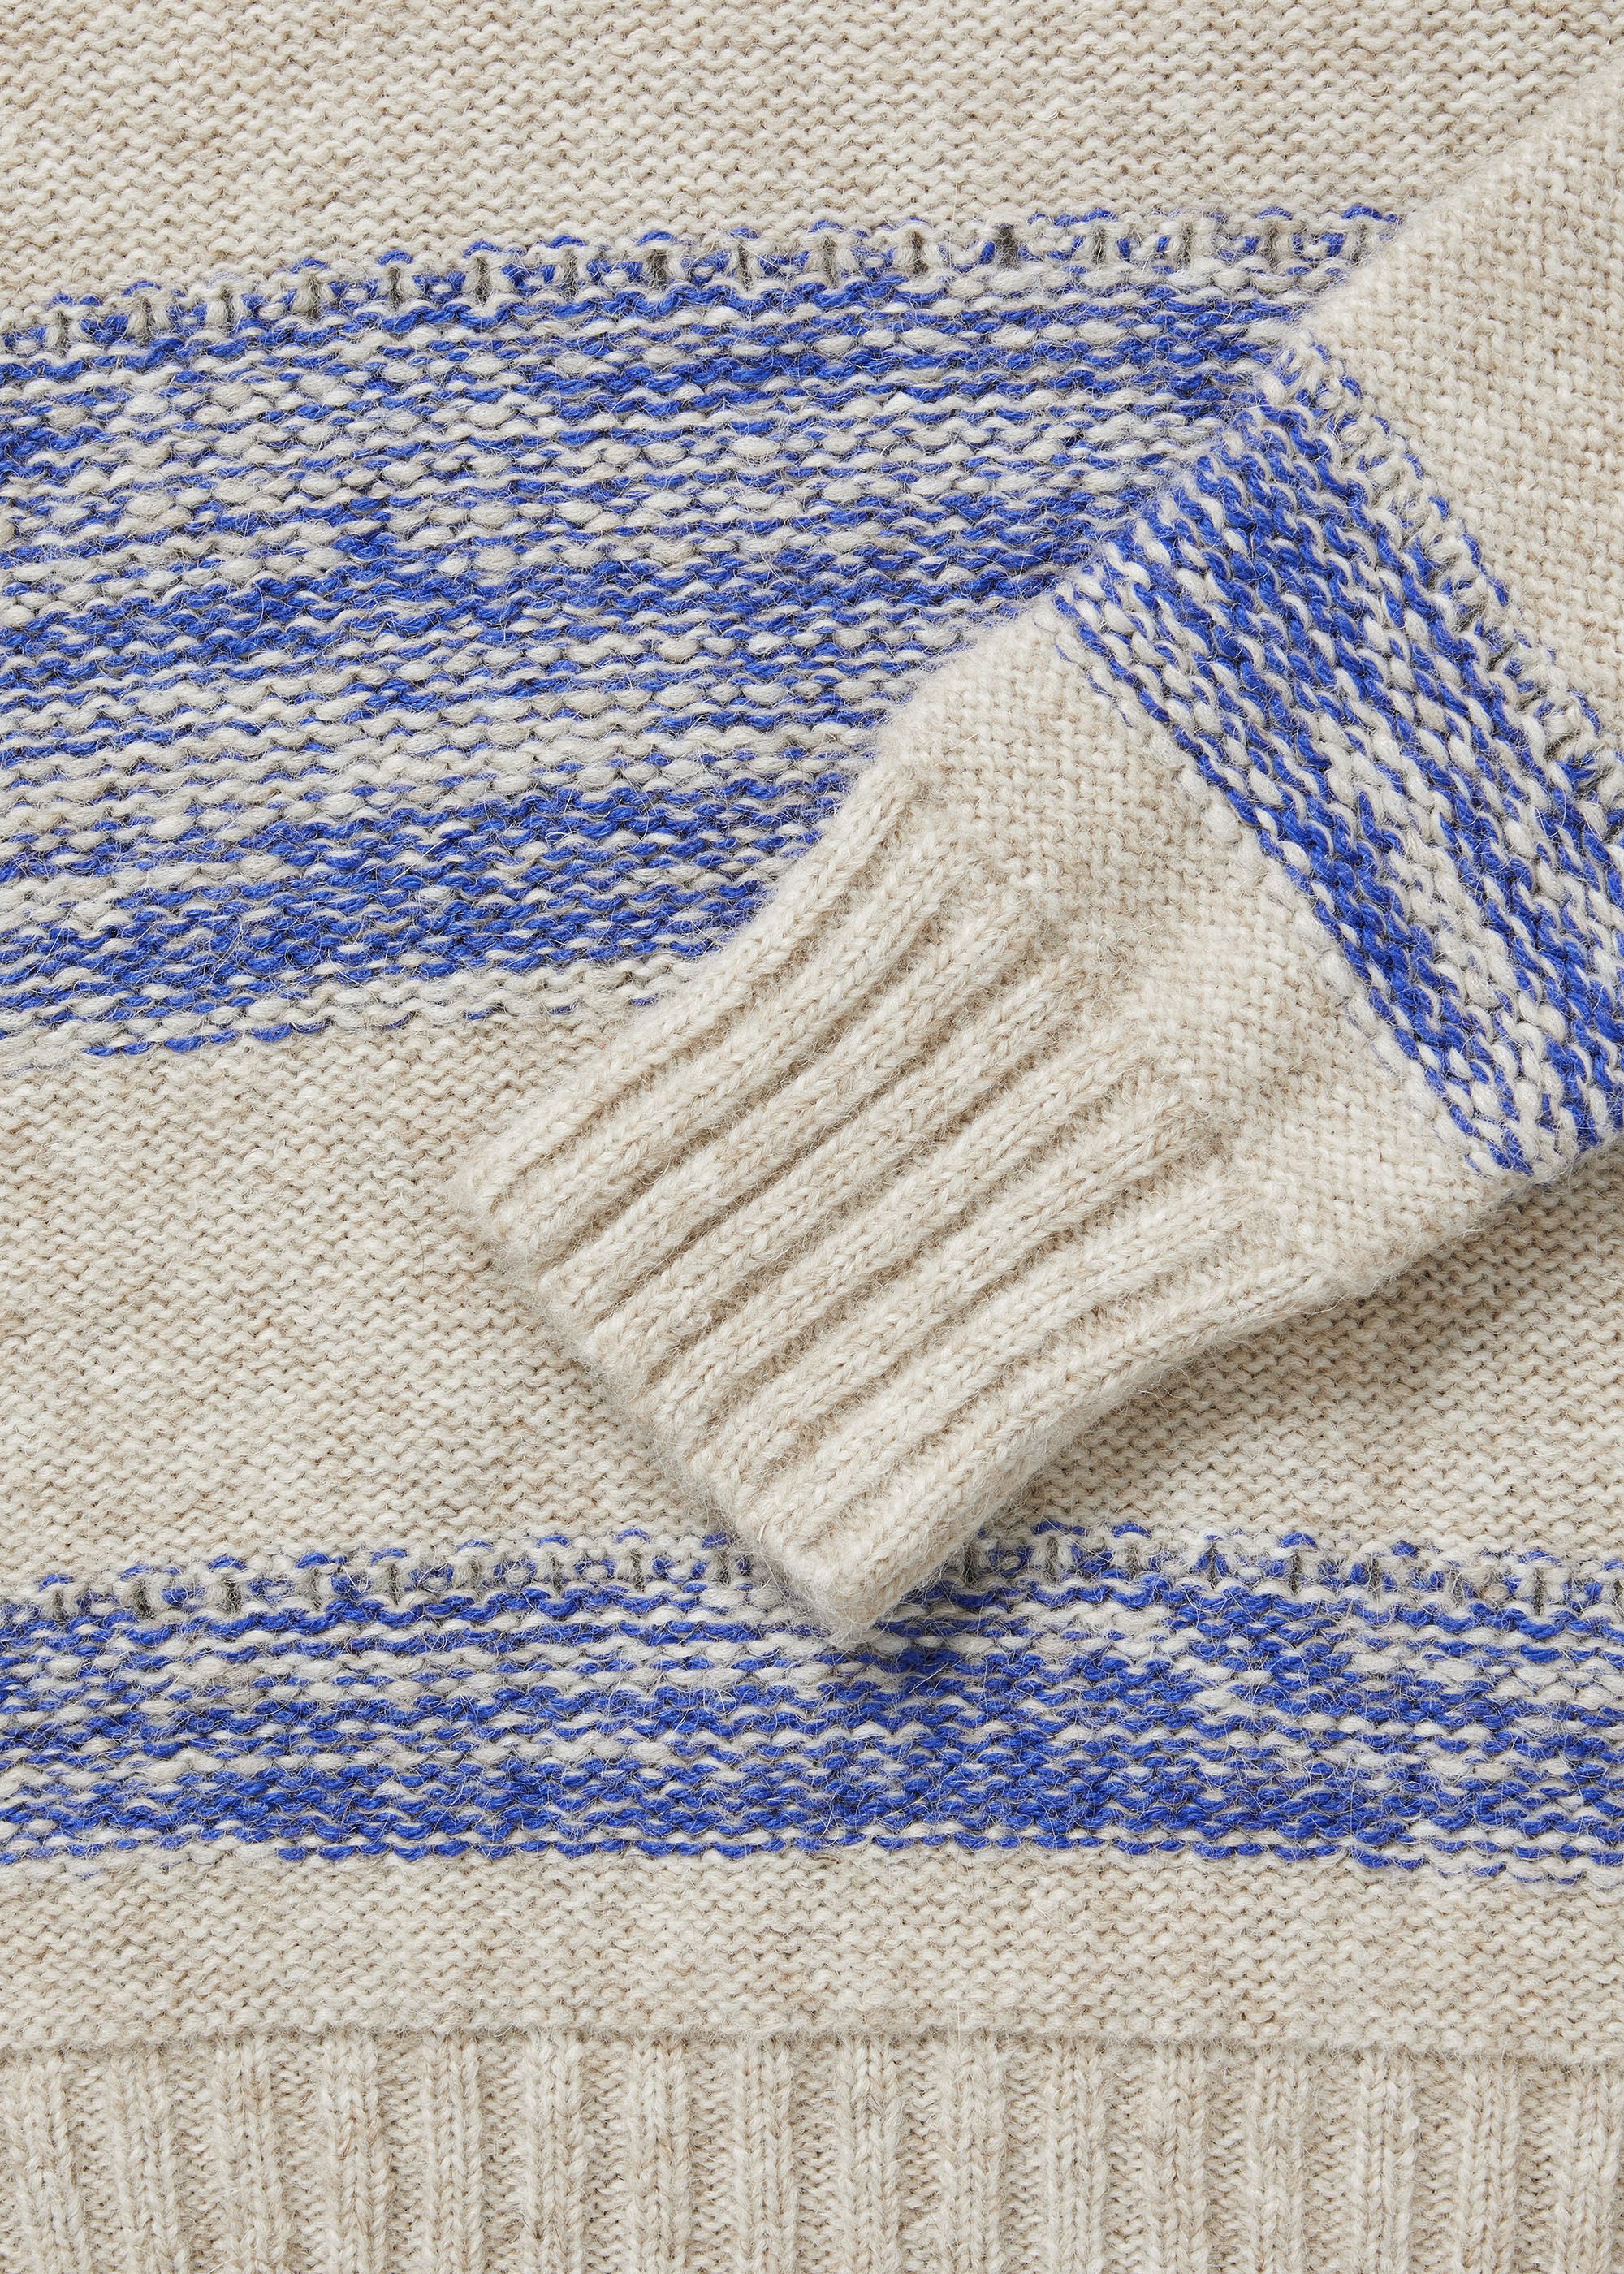 Knitwear - Brooke llama wool sweater